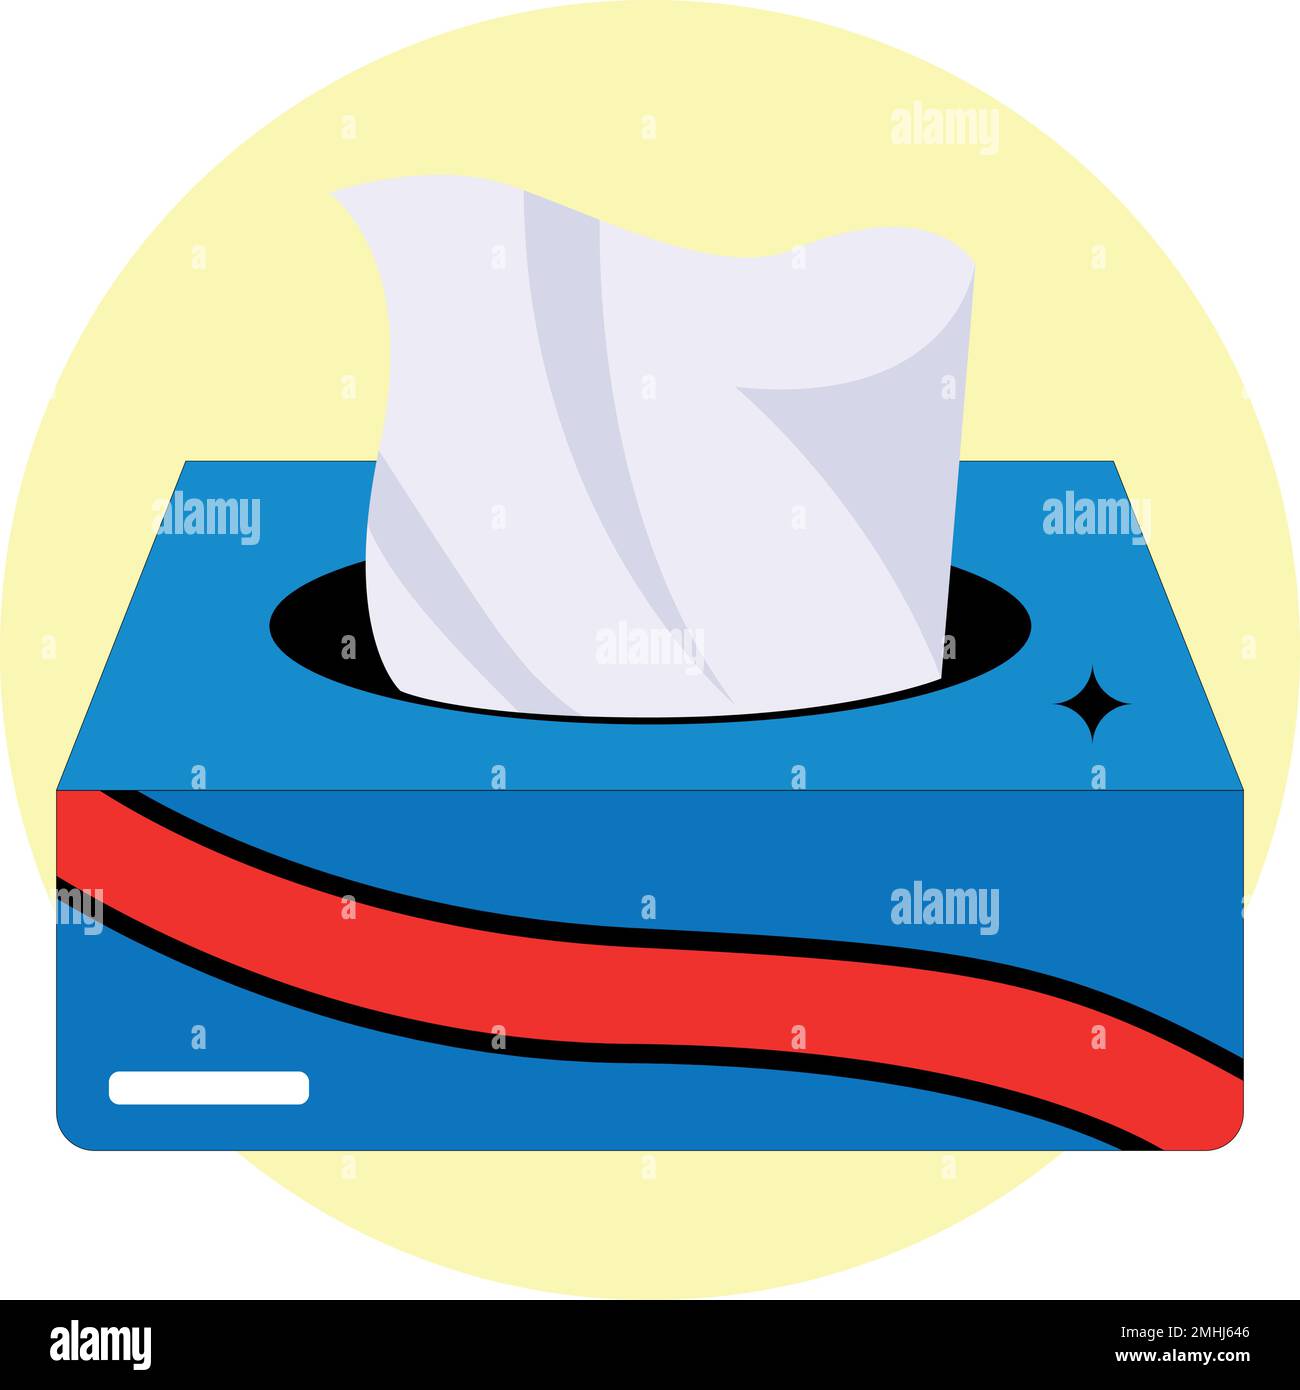 Tissue box illustration vector, use for multi purpose Stock Vector